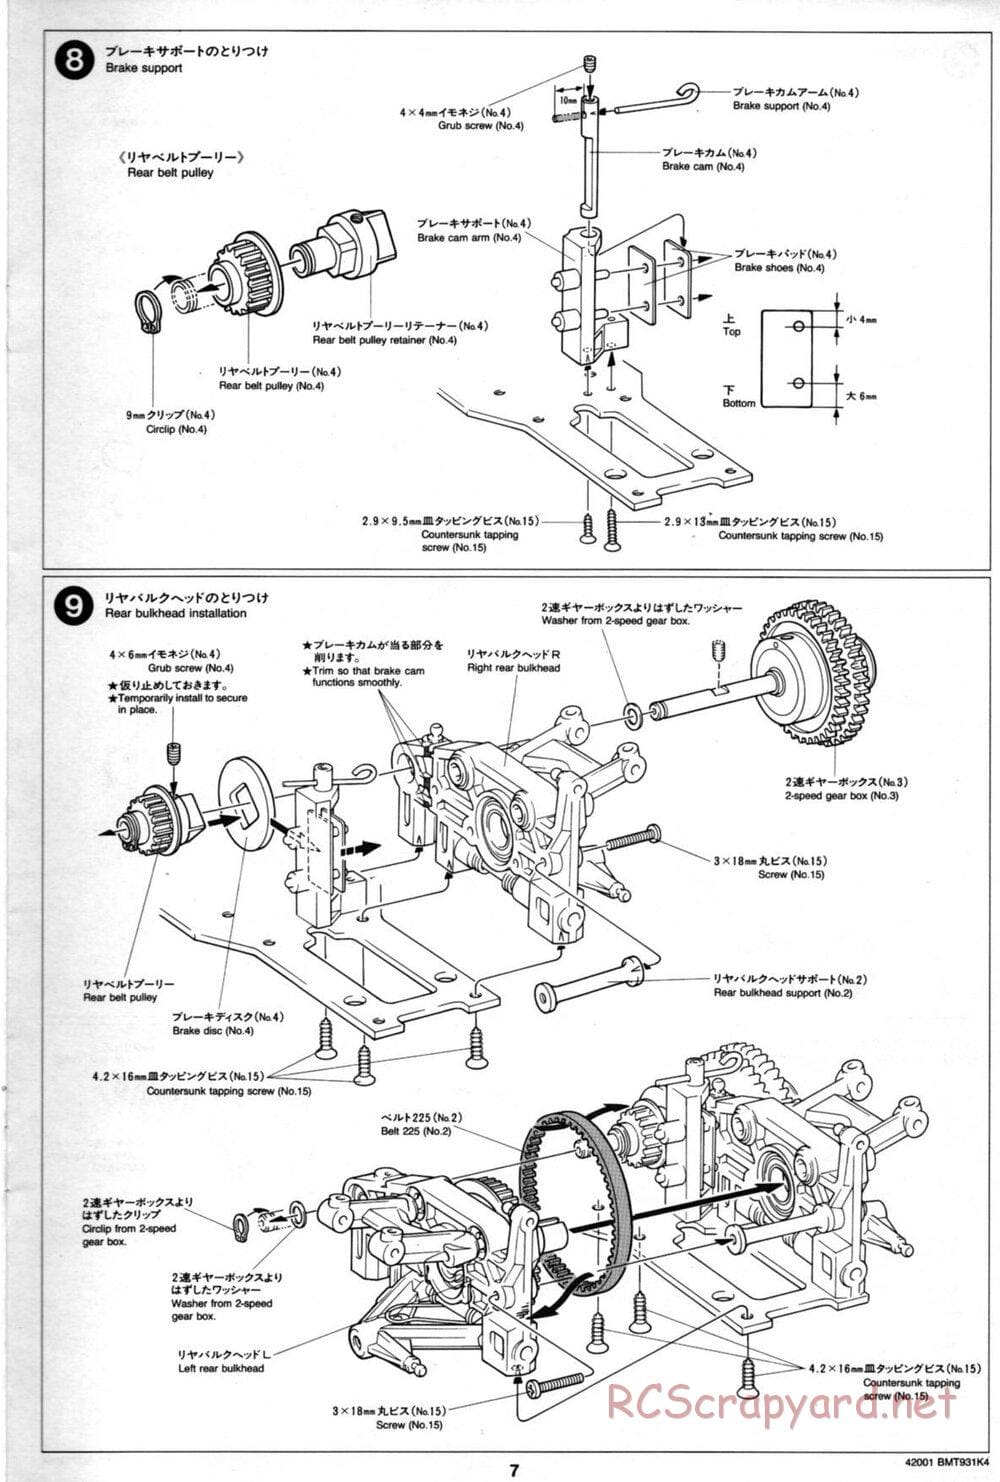 Tamiya - BMT 931 K4 Racing Chassis - Manual - Page 7